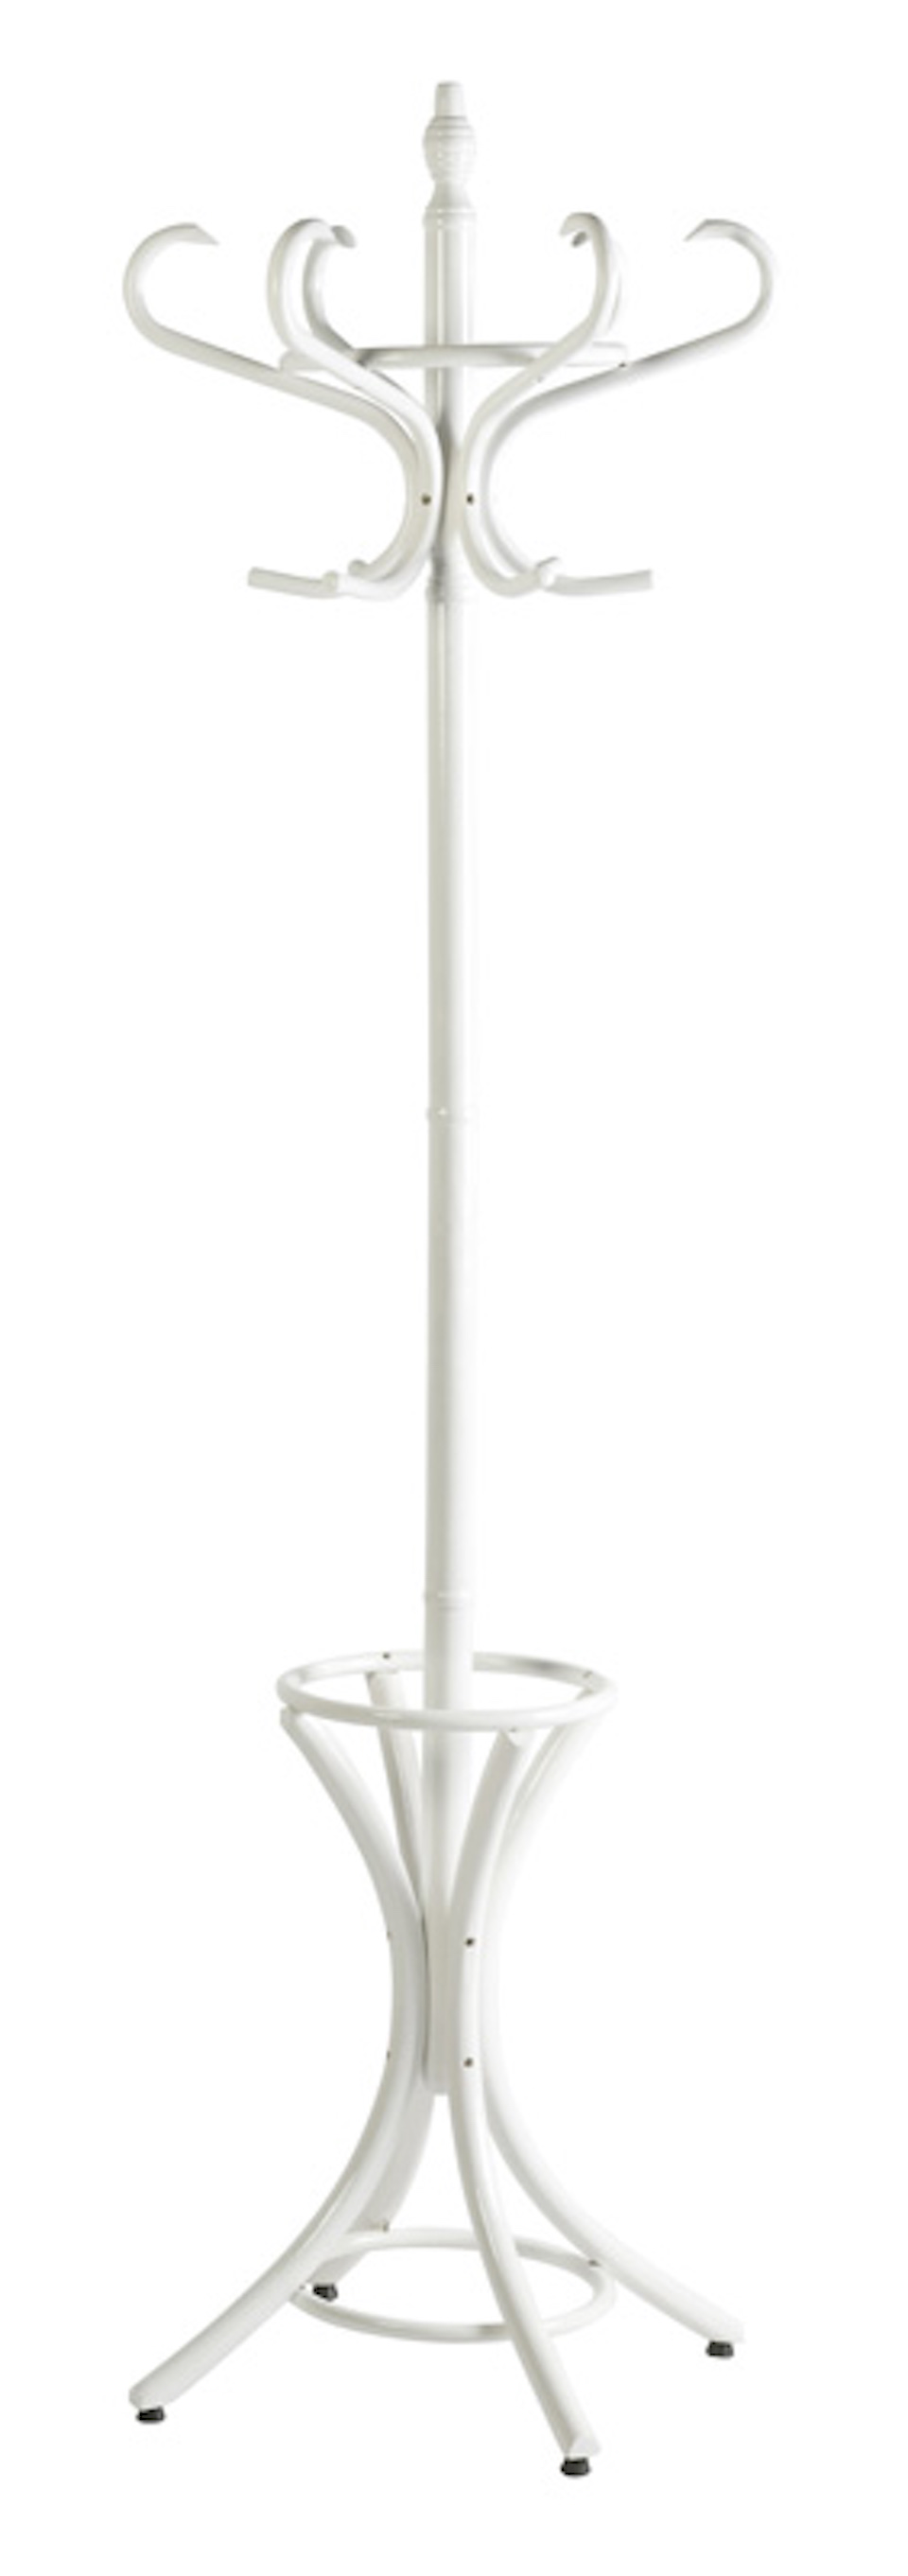 Freistehender Garderoben- & Regenschirmständer aus Holz | Höhe 185cm | Drehbare Krone & 12 Haken | Weiß